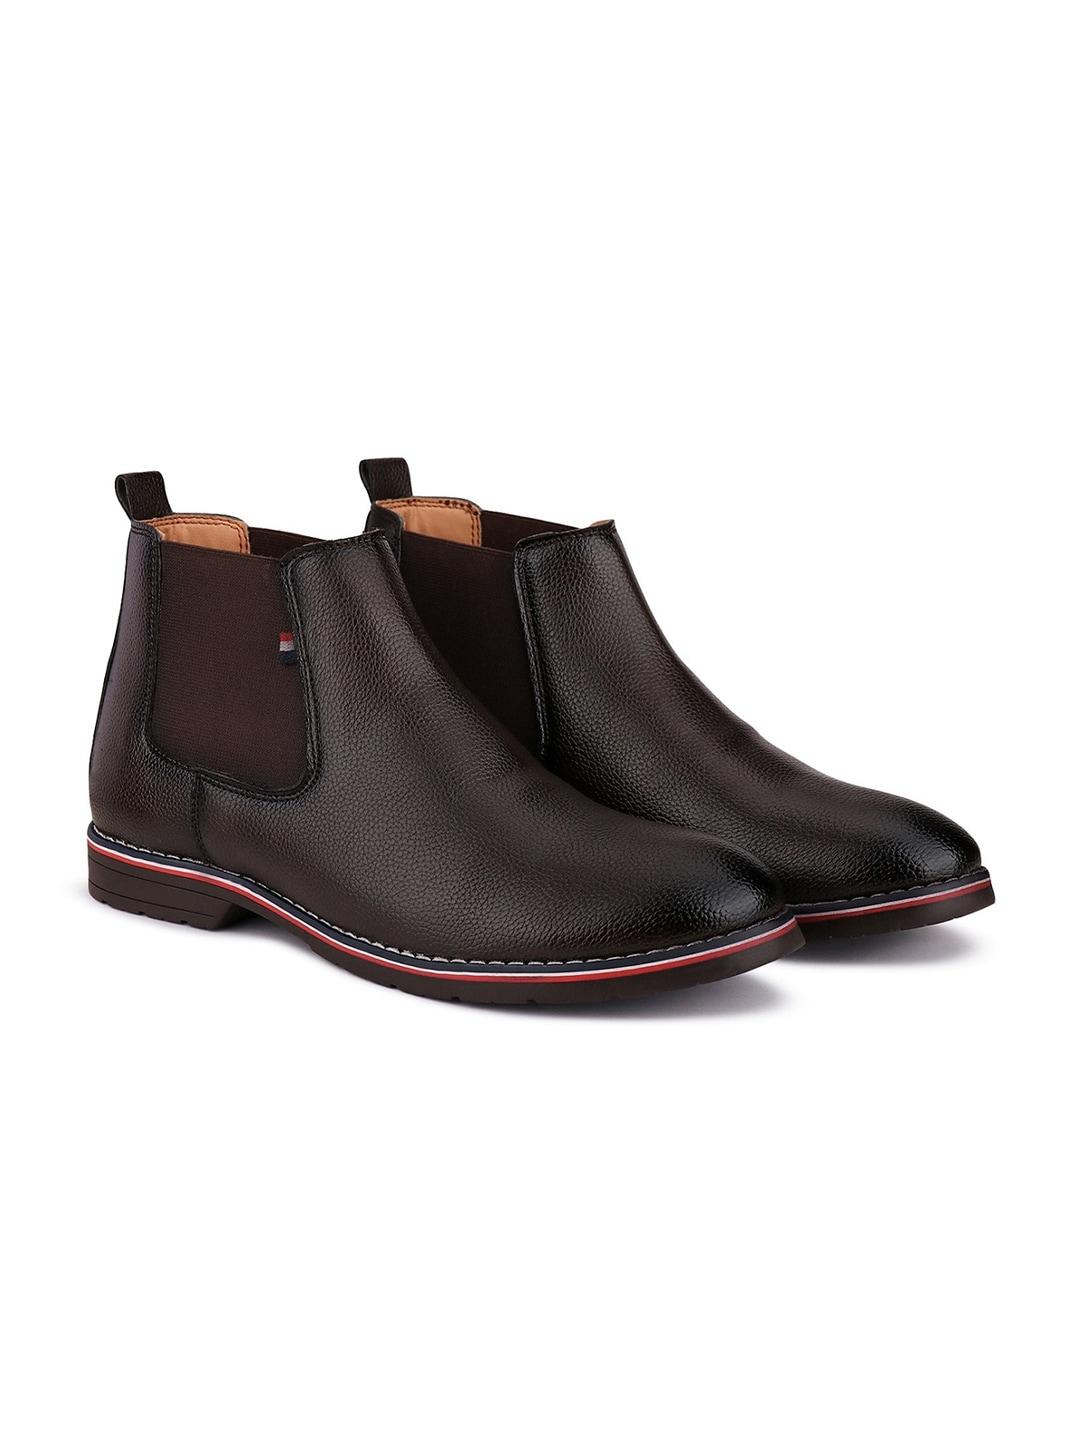 bersache-men-mid-top-leather-chelsea-boots